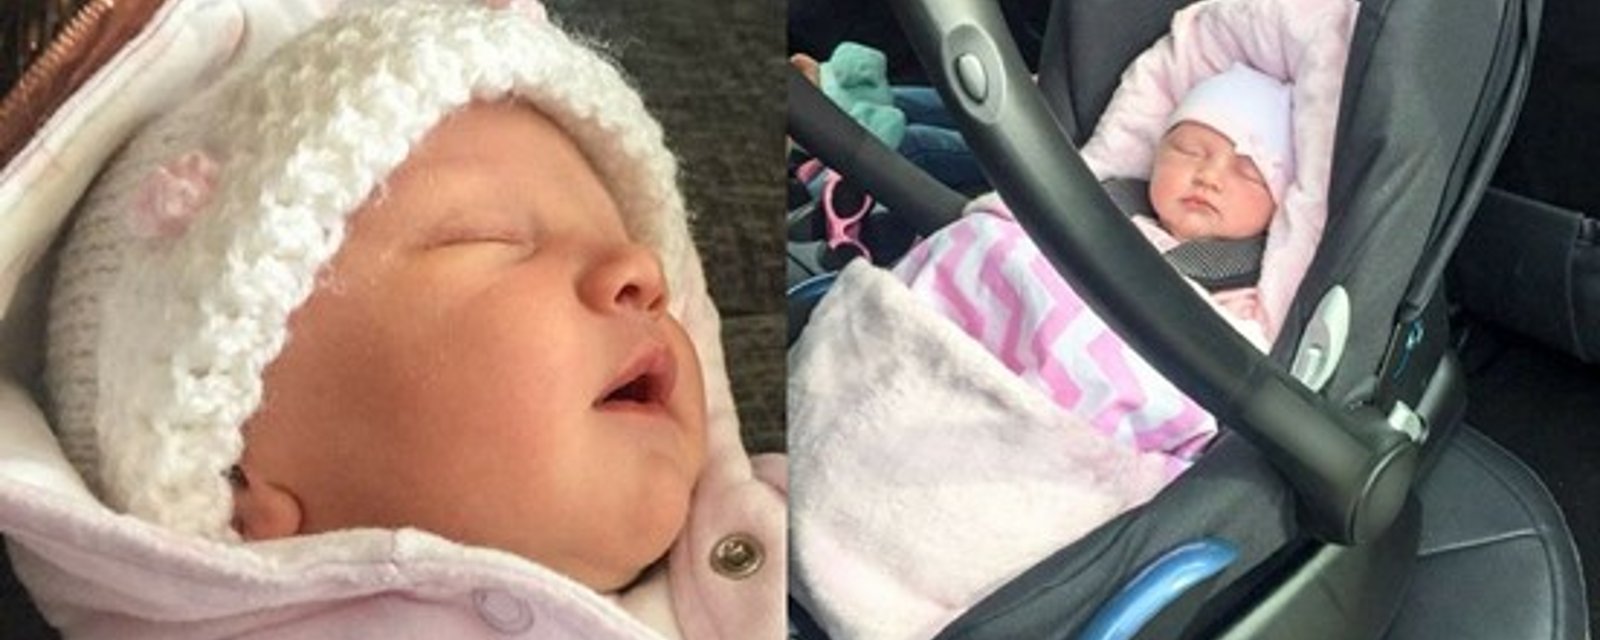 Une mère prévient les autres parents des dangers du siège d'auto pour les bébés​